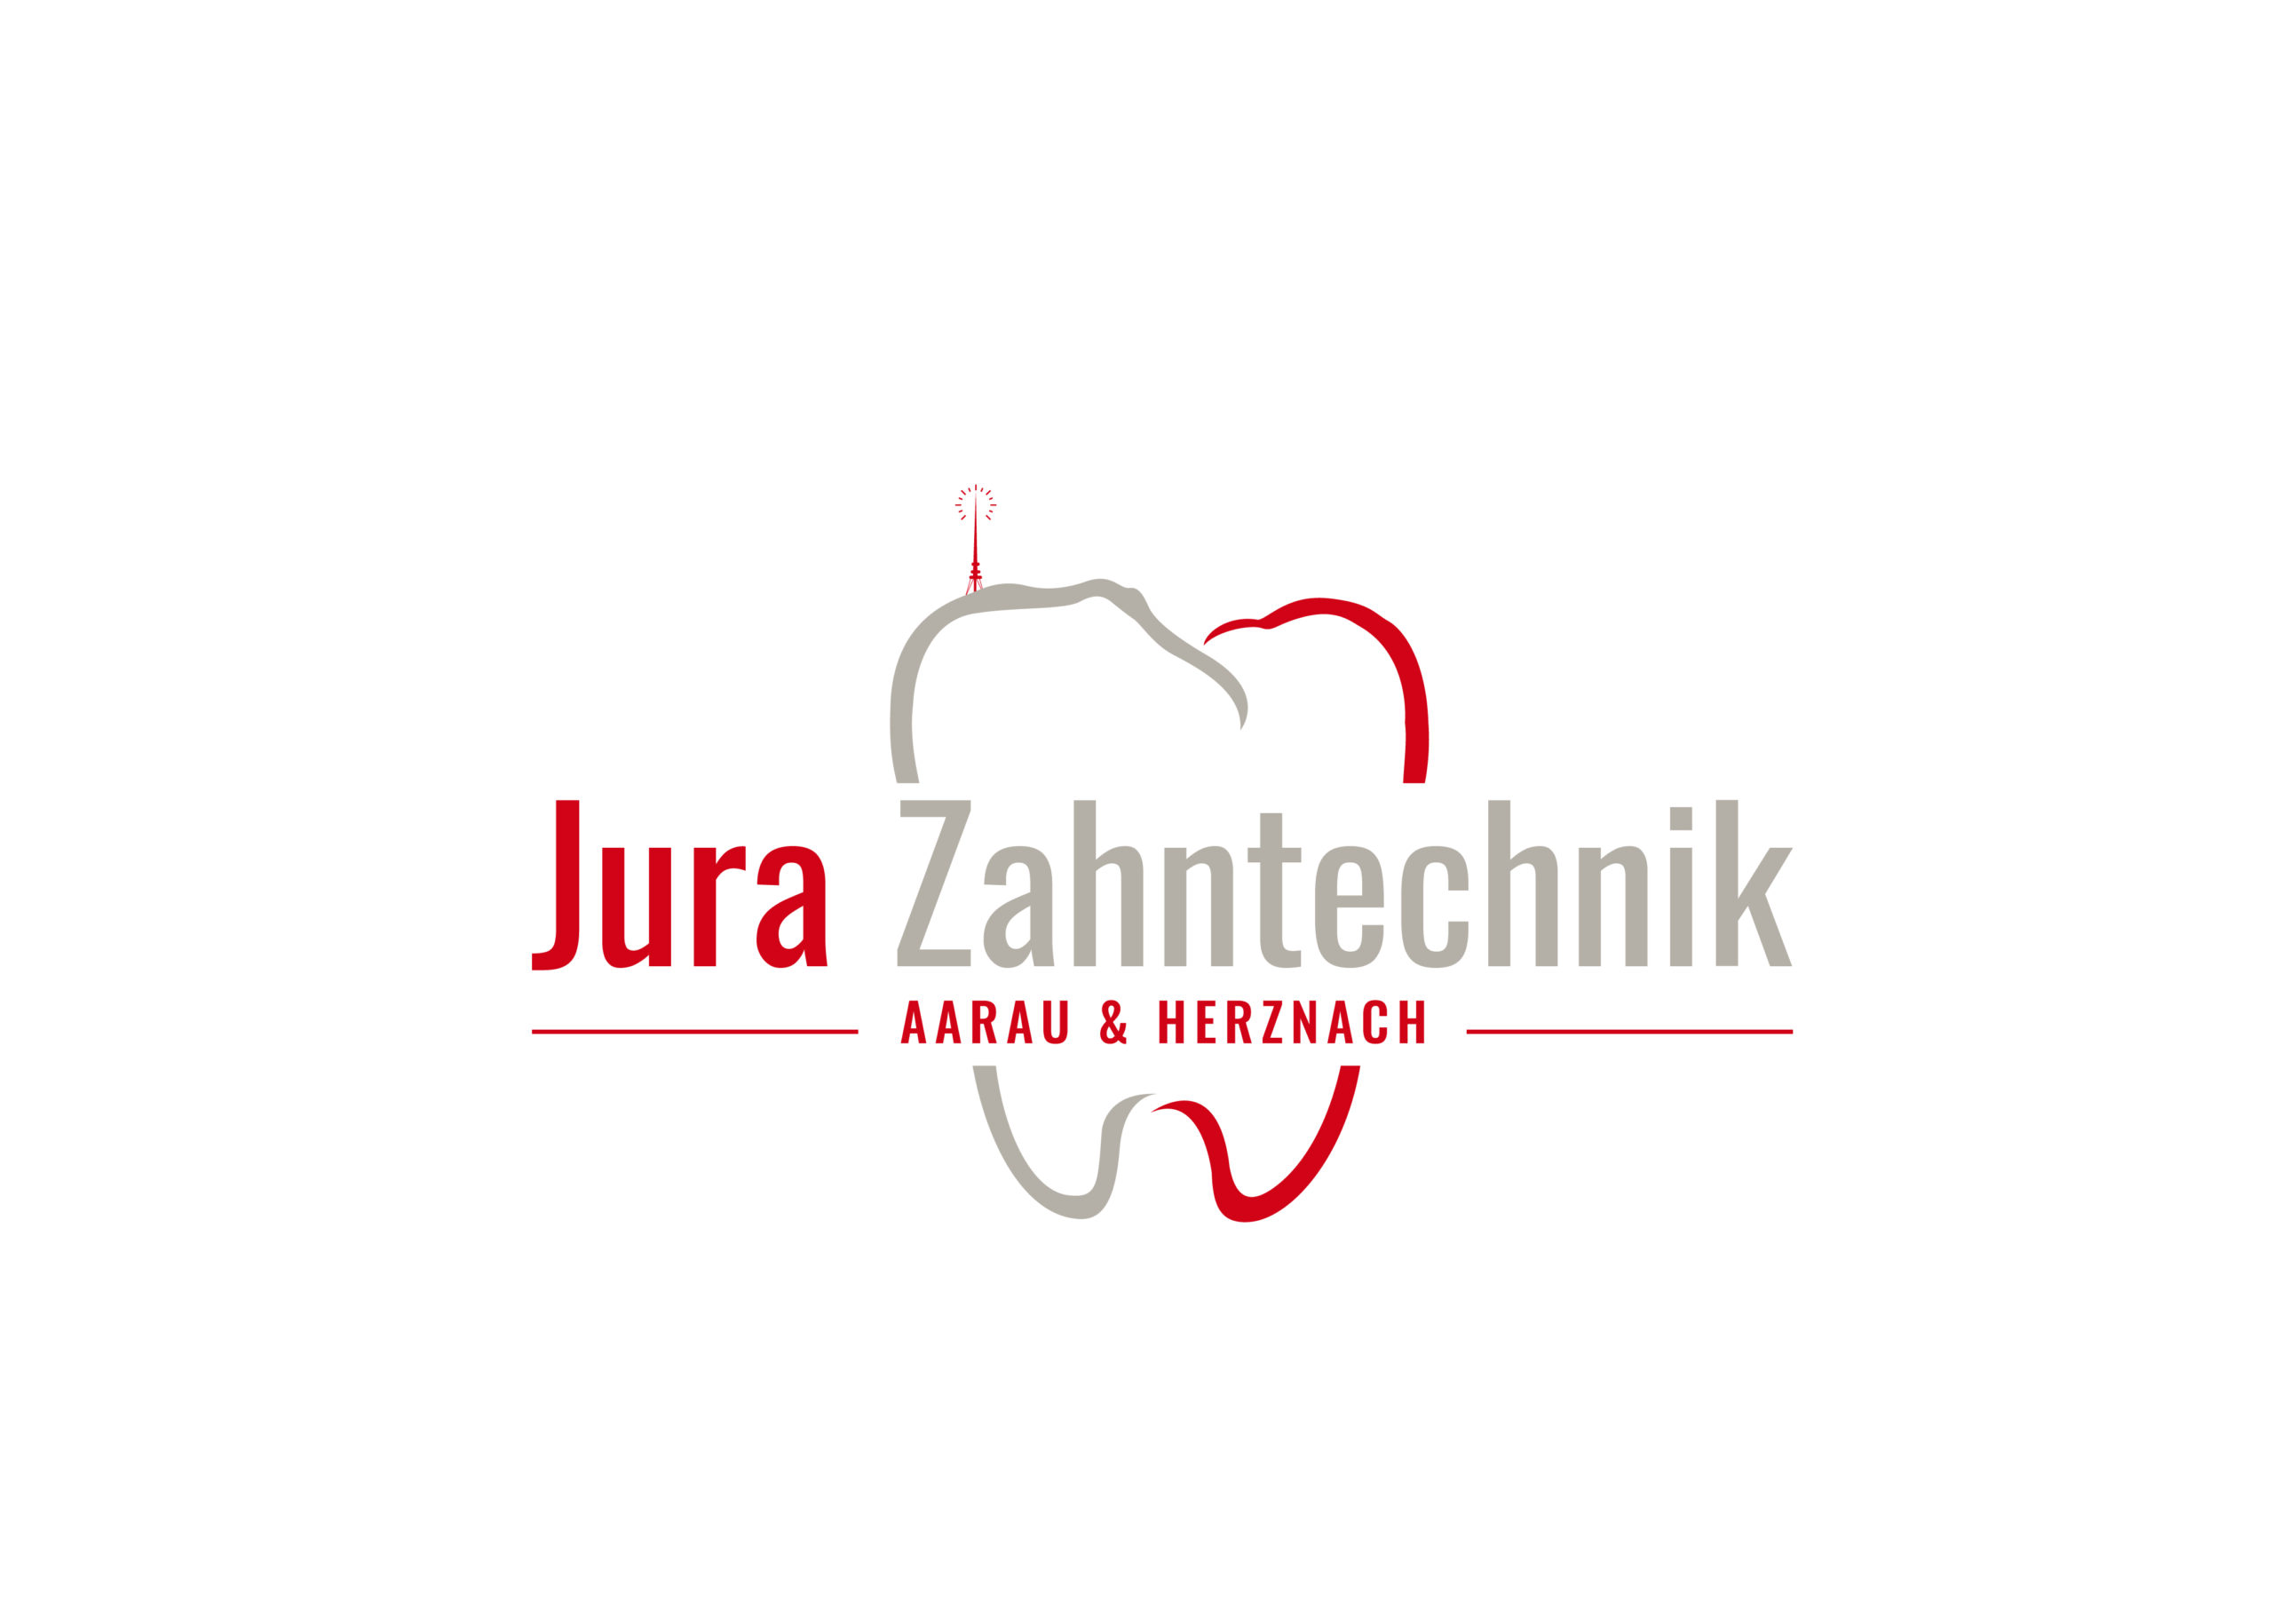 Jura Zahntechnik AG in Aarau & Herznach